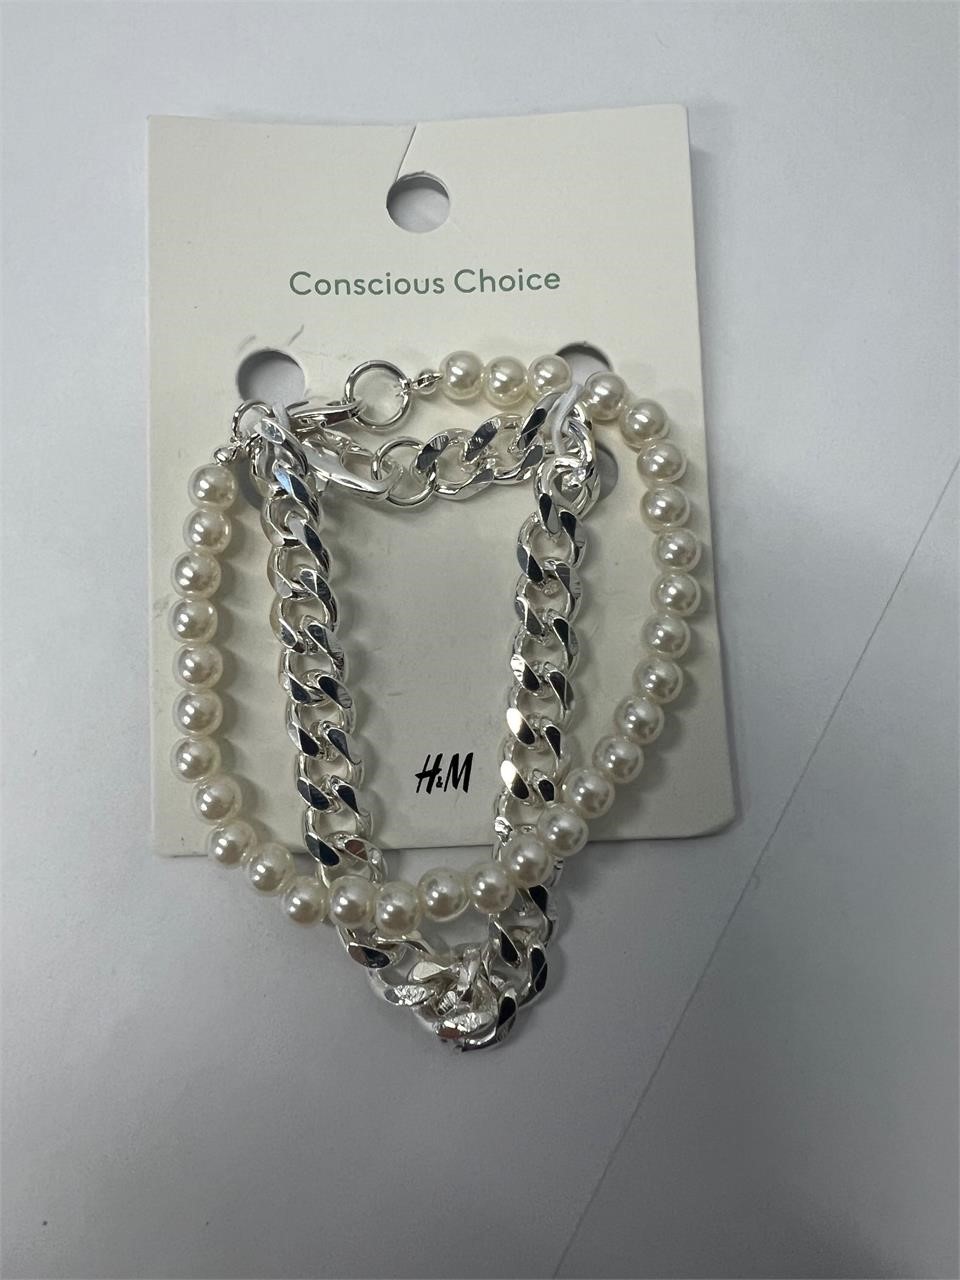 H&M bracelets